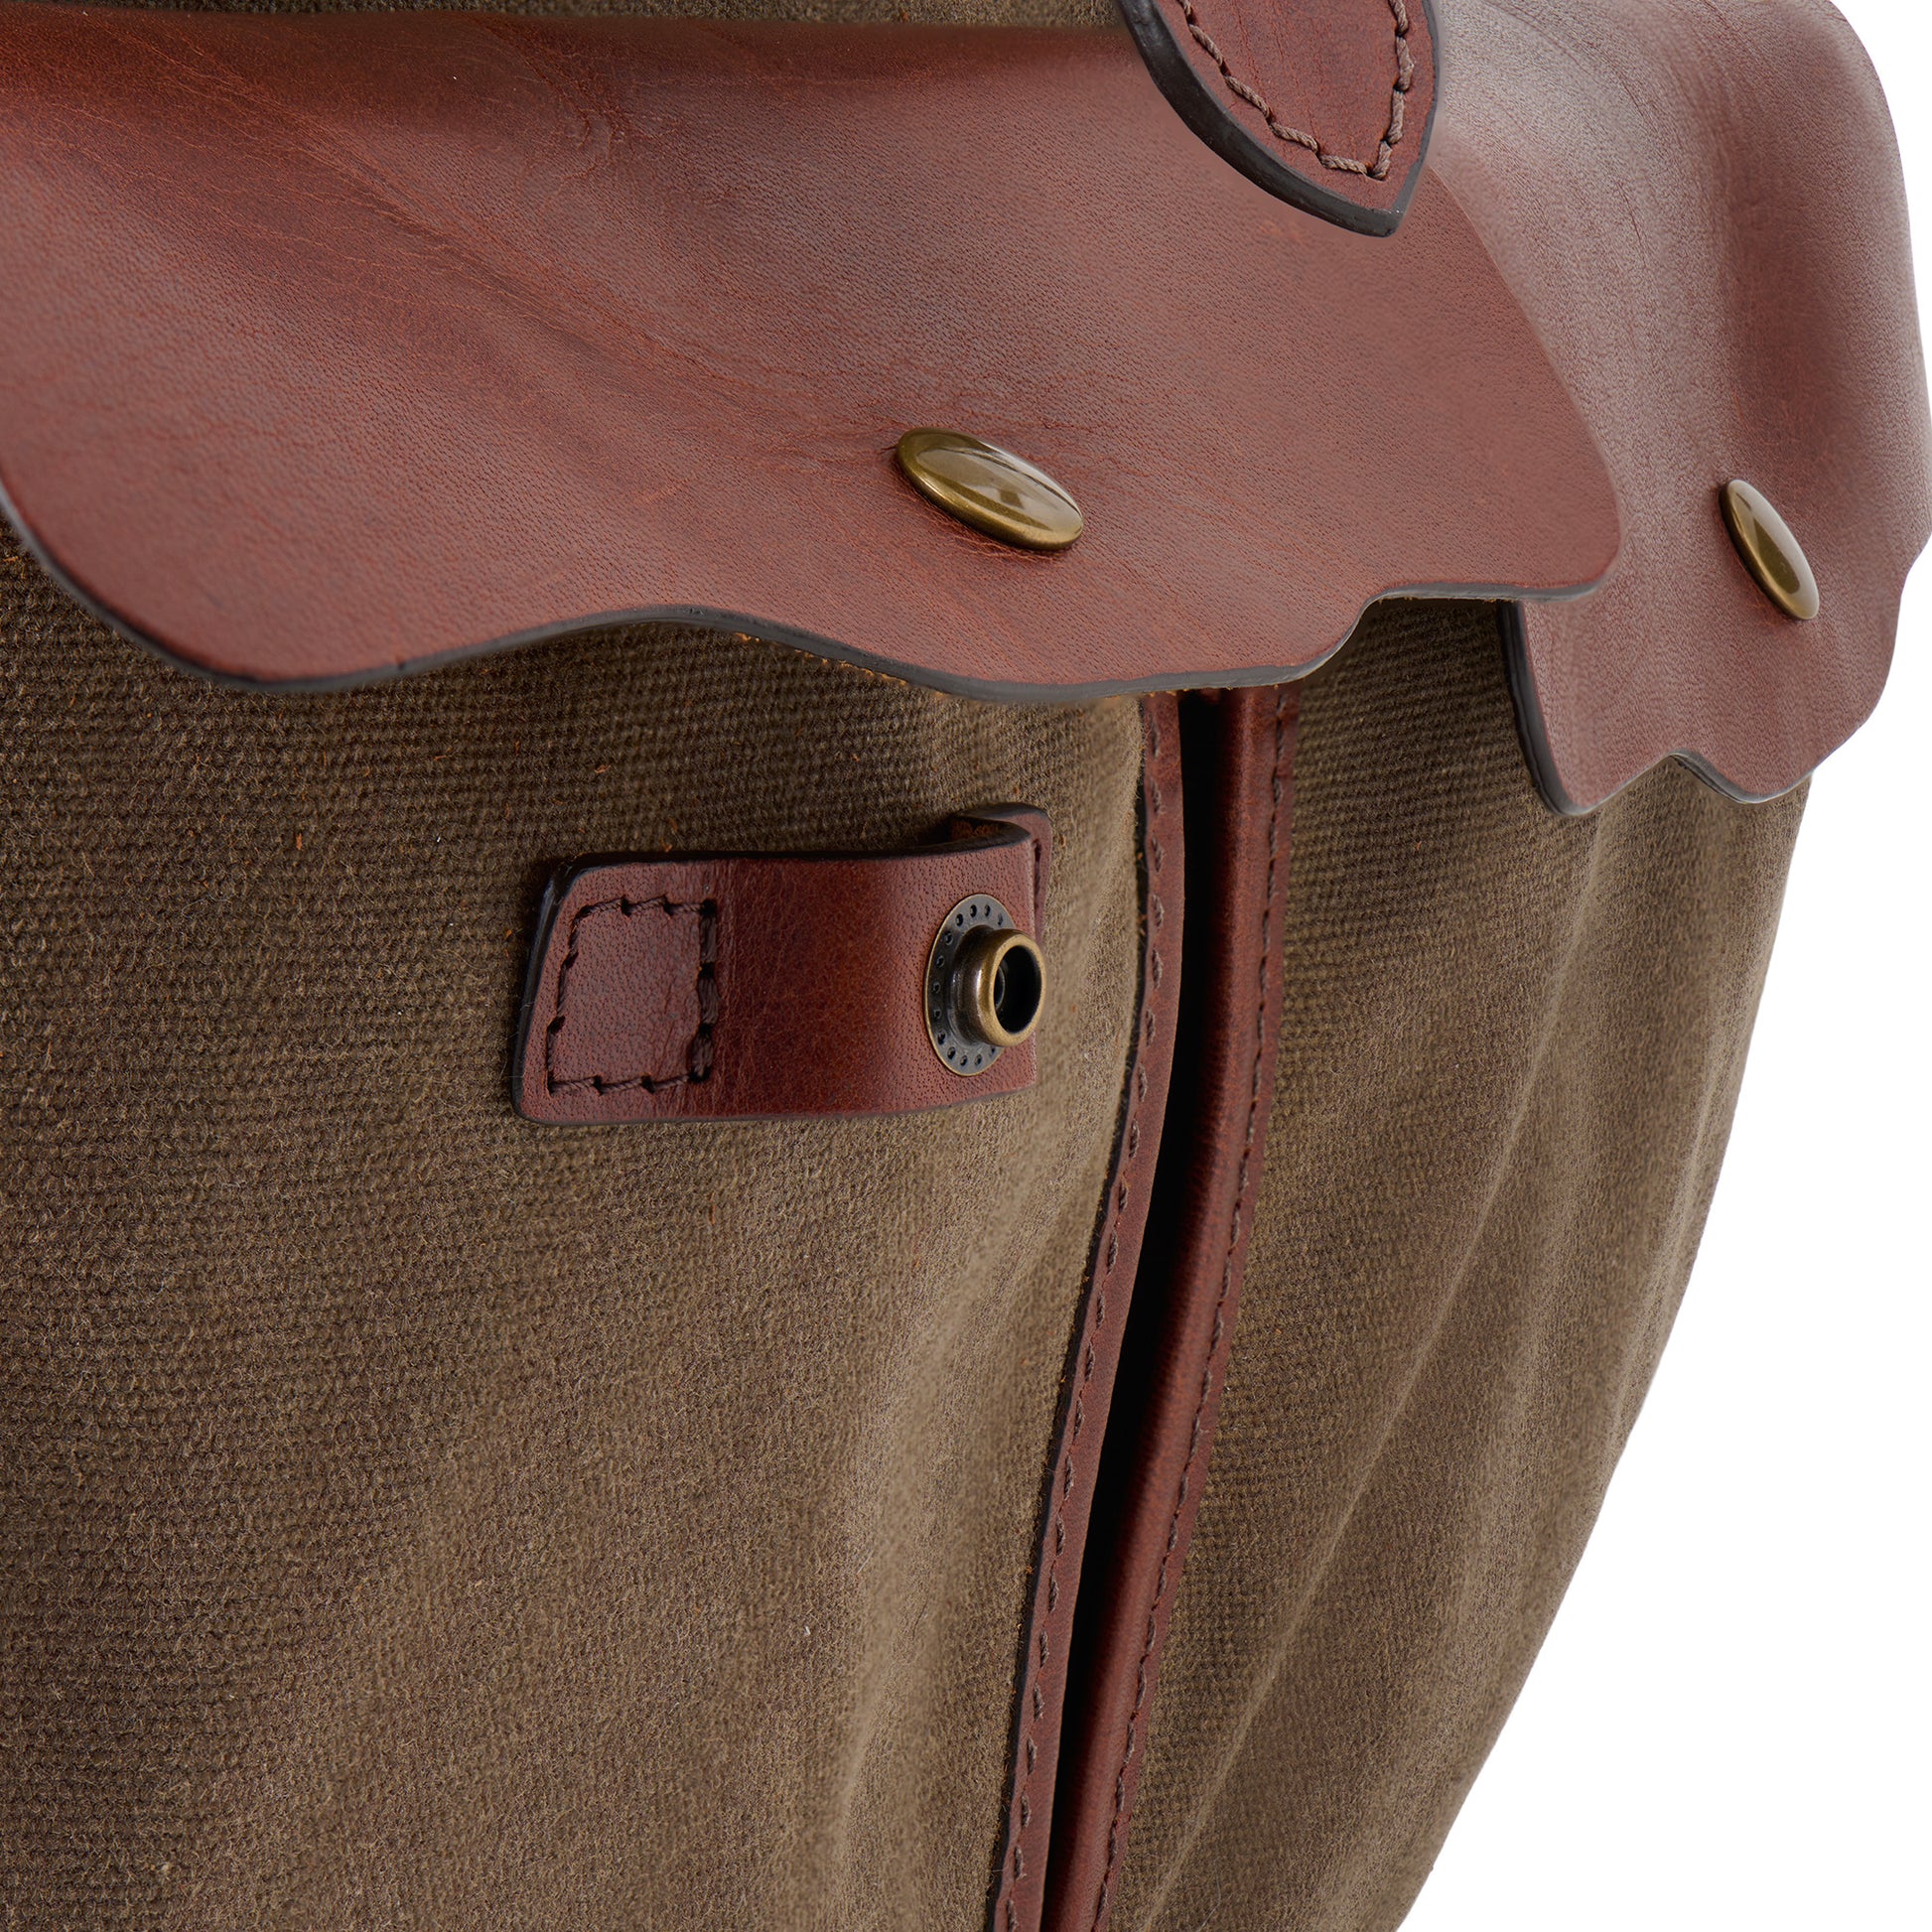 Jackson Wayne Founder's Backpack front pocket detail close up